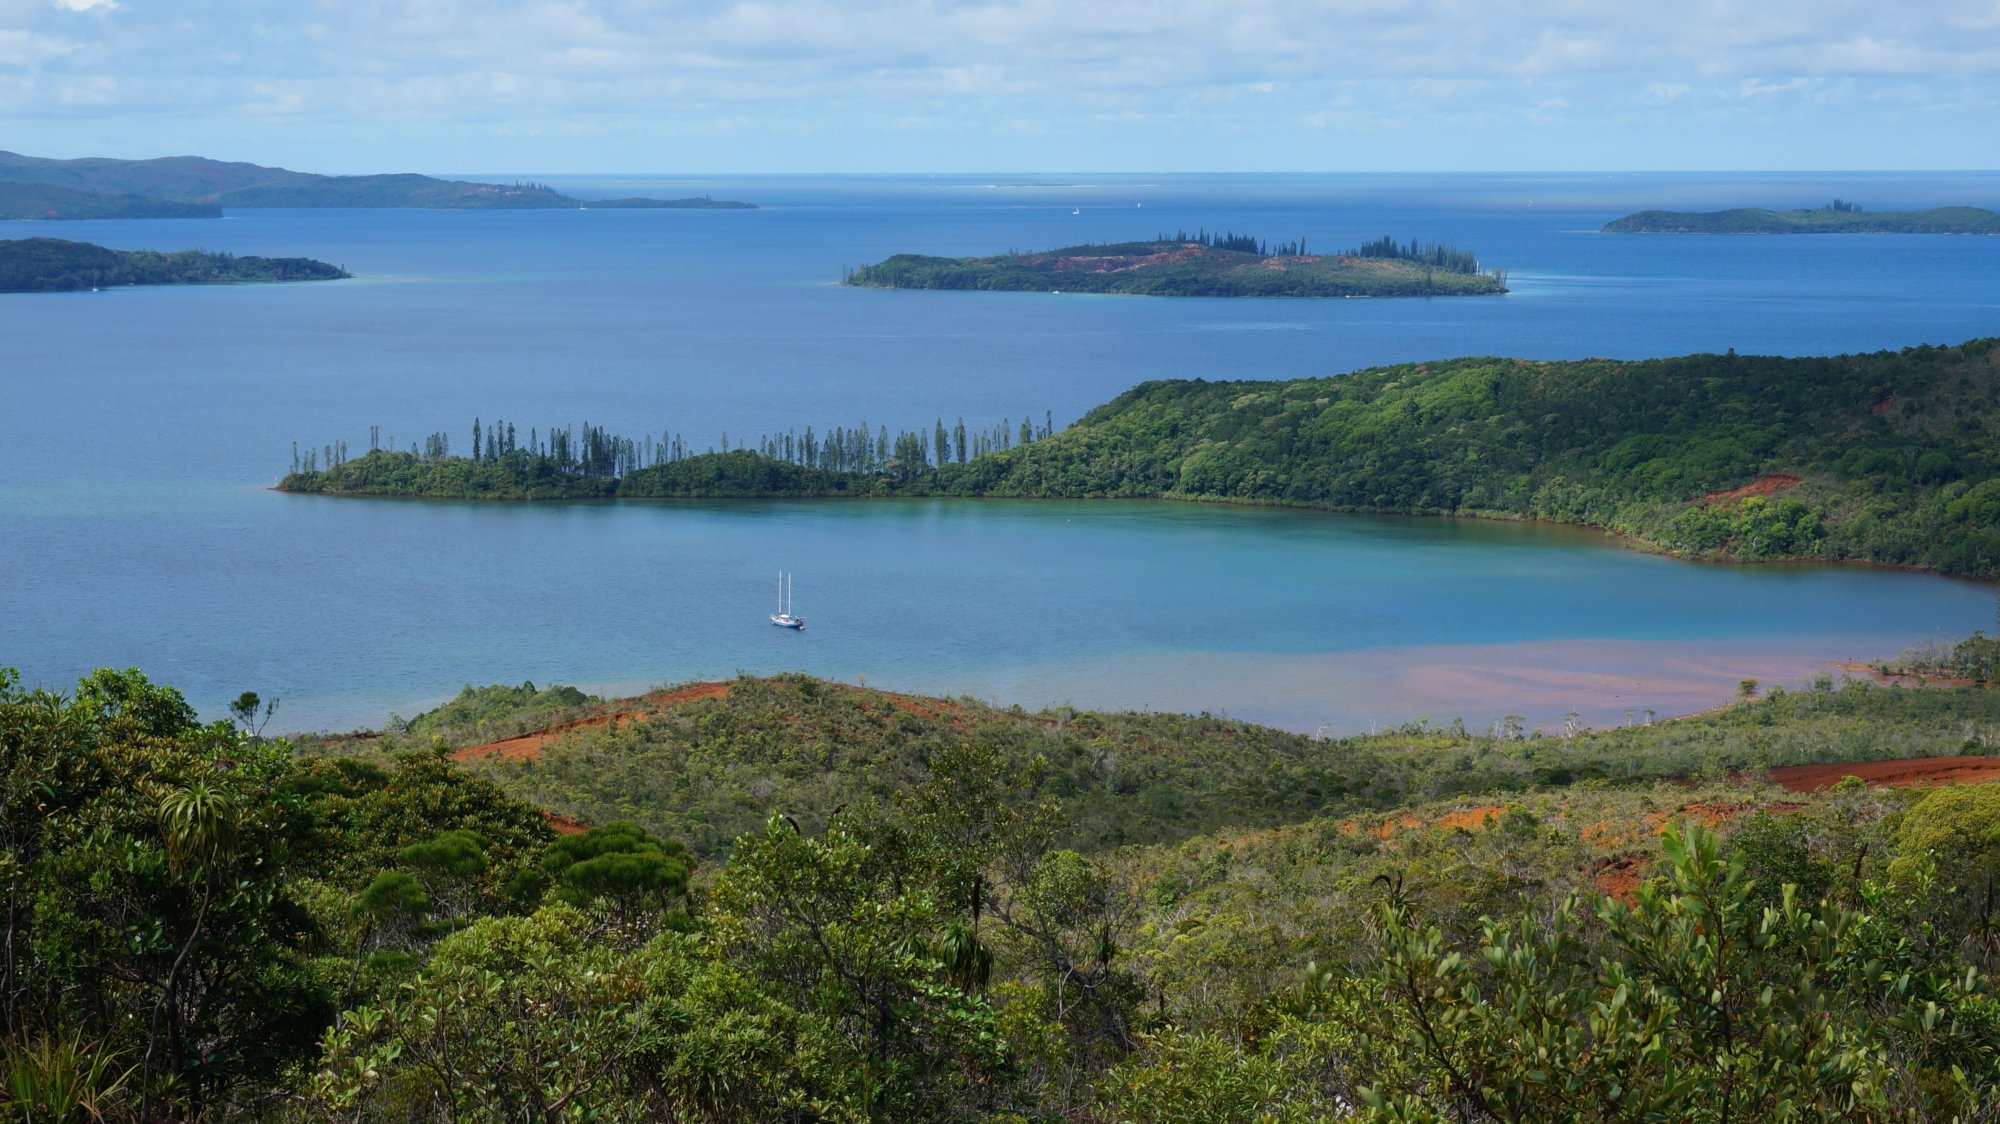 La baie de Prony, dans le lagon sud de la Nouvelle-Calédonie. On y trouve un site exceptionnel, connu des plongeurs et protégé, où des cheminées hydrothermales émettent des fluides alcalins. Dans ce milieu très pauvre en oxygène prospère une flore microbienne très particulière. © R. Price